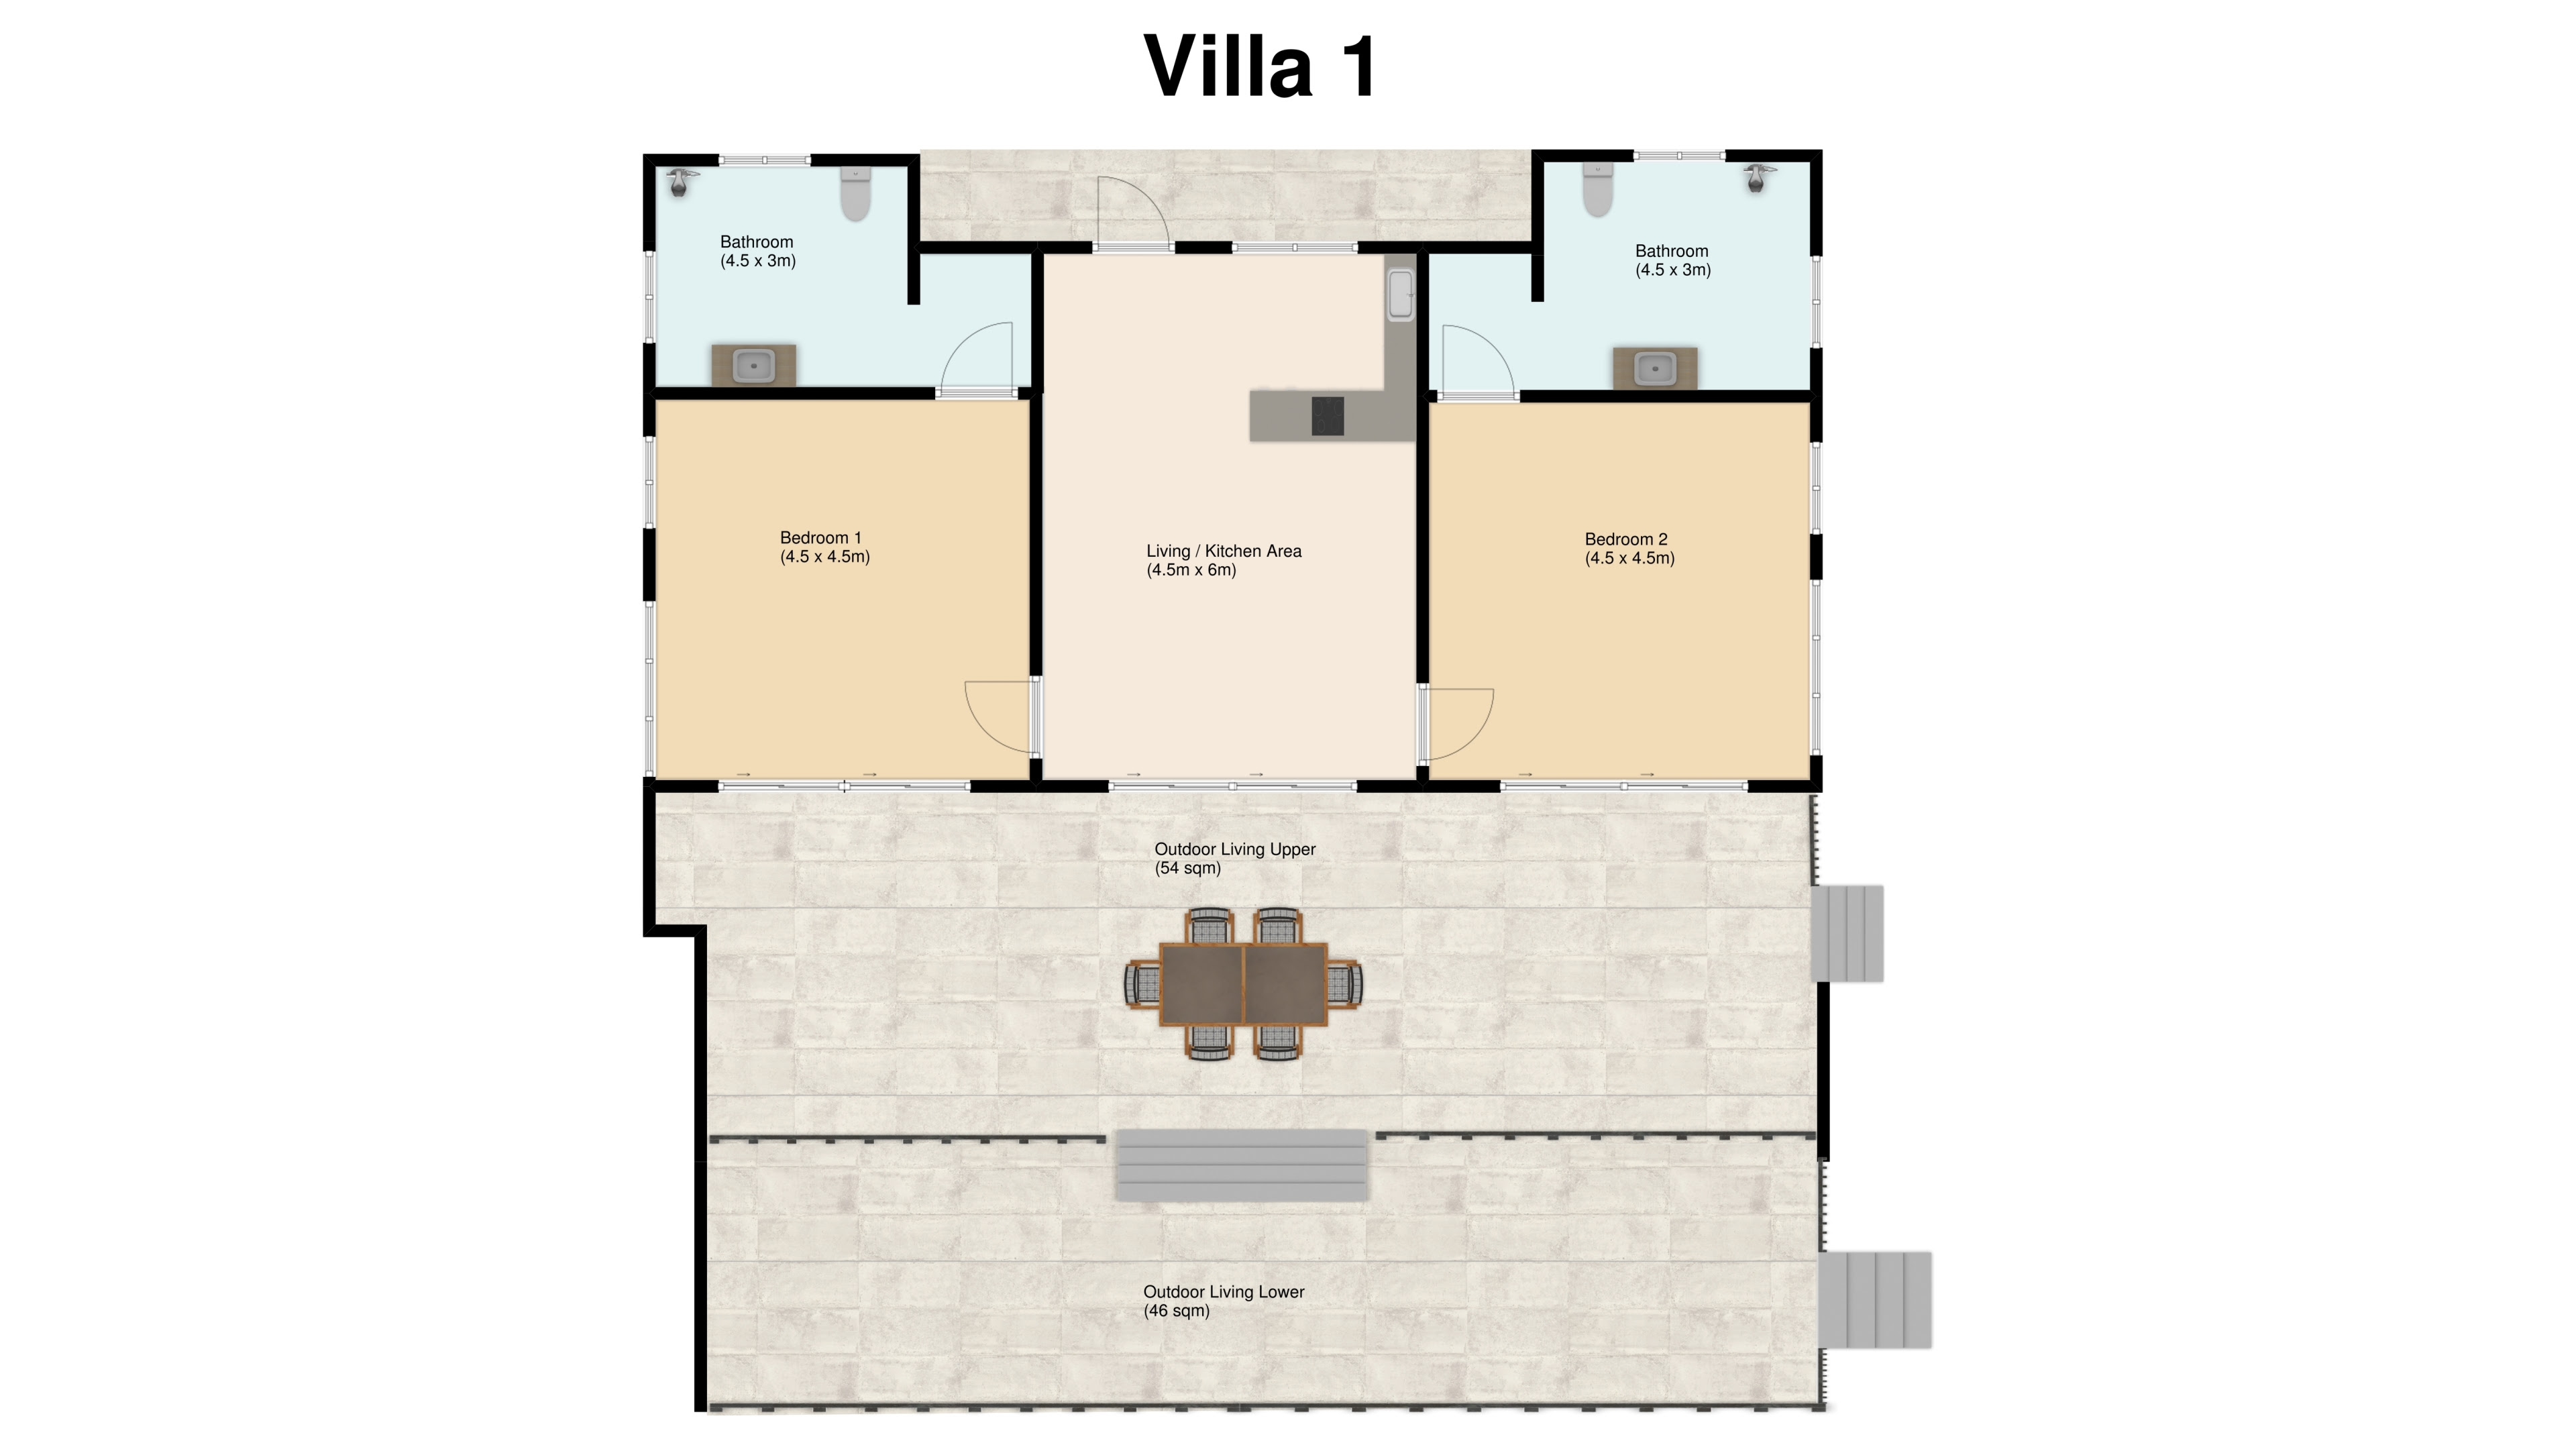 Villa 1 